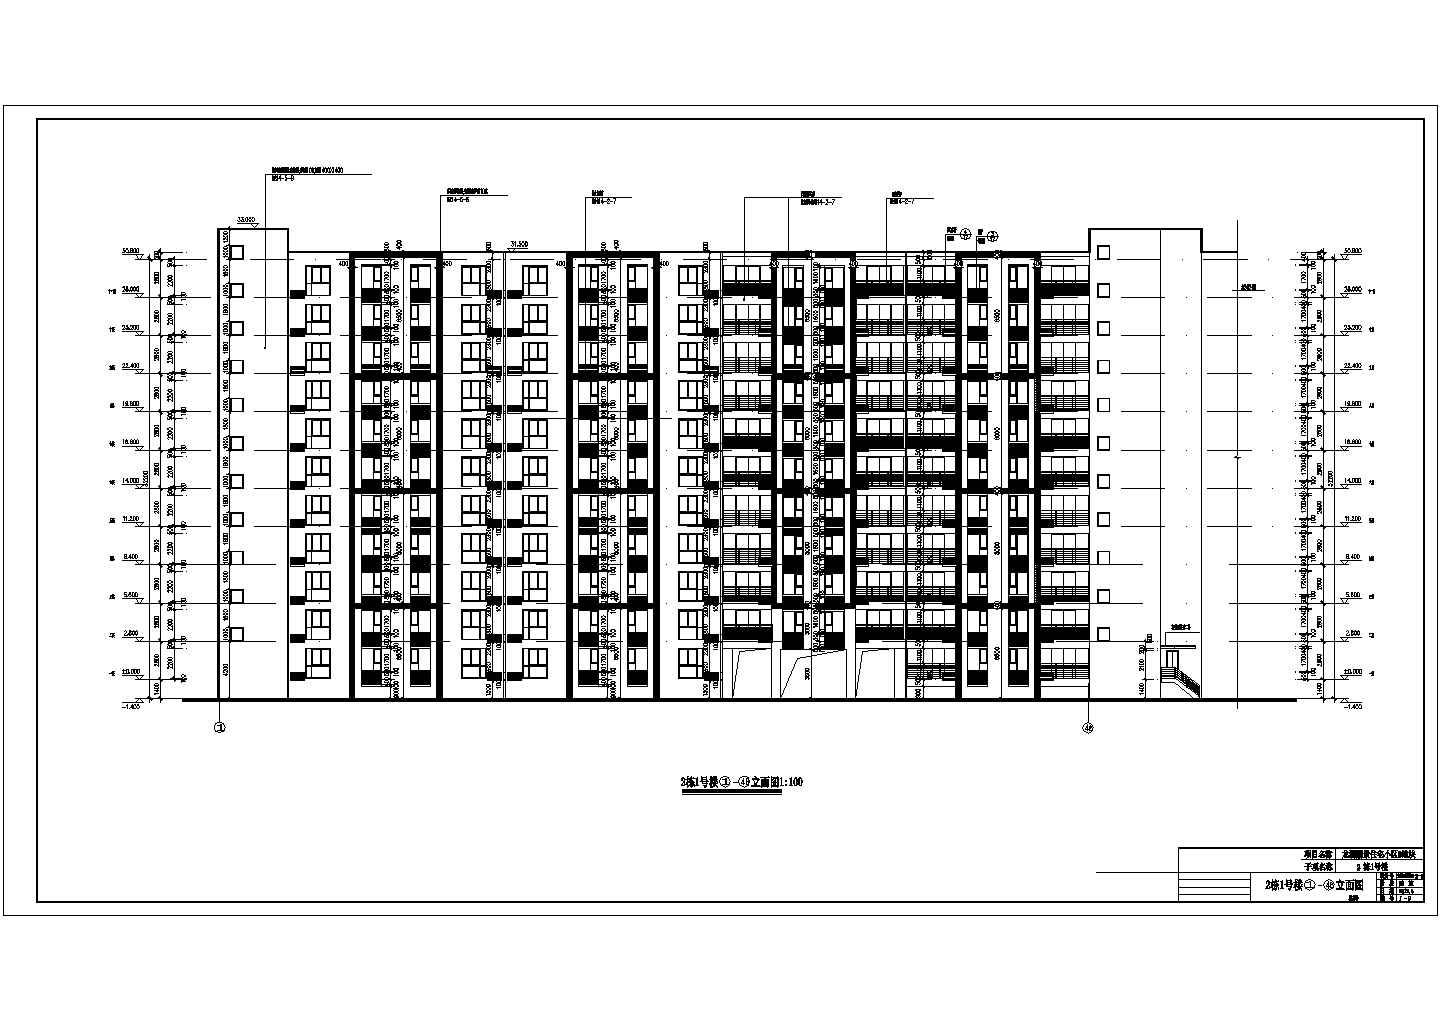 四川省4套11层高层住宅全专业设计施工图CAD